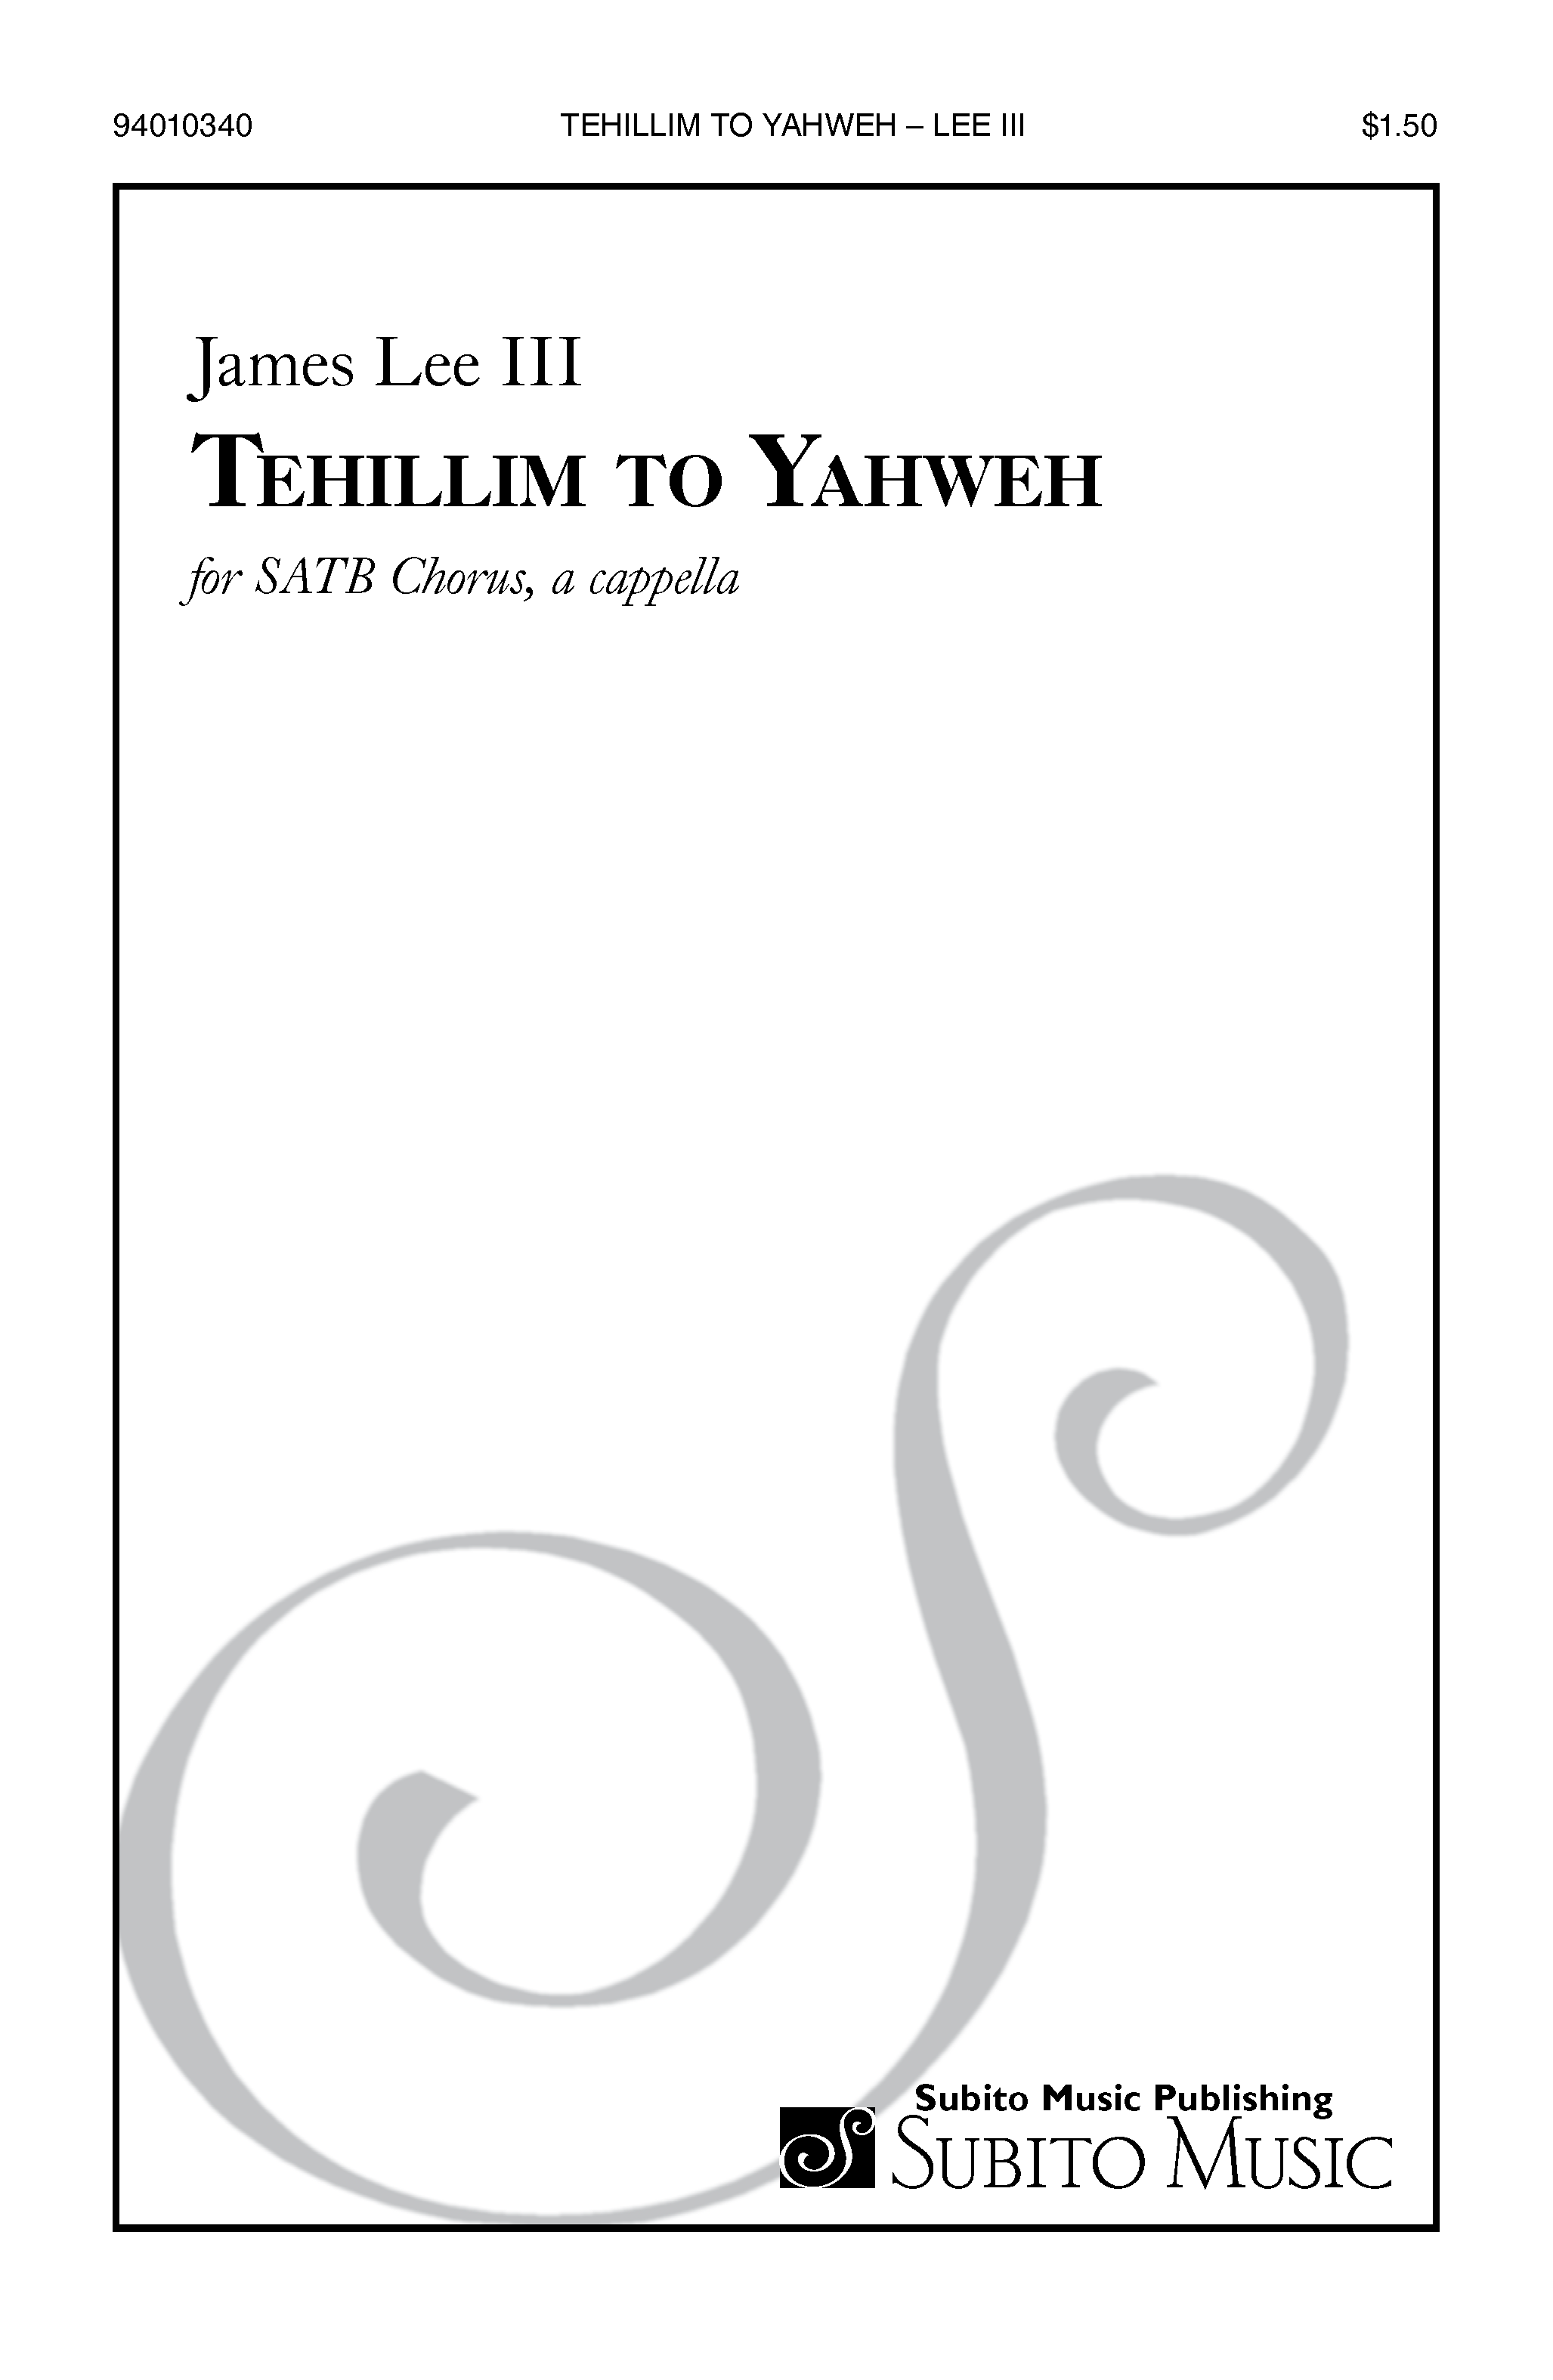 Tehillim to Yahweh